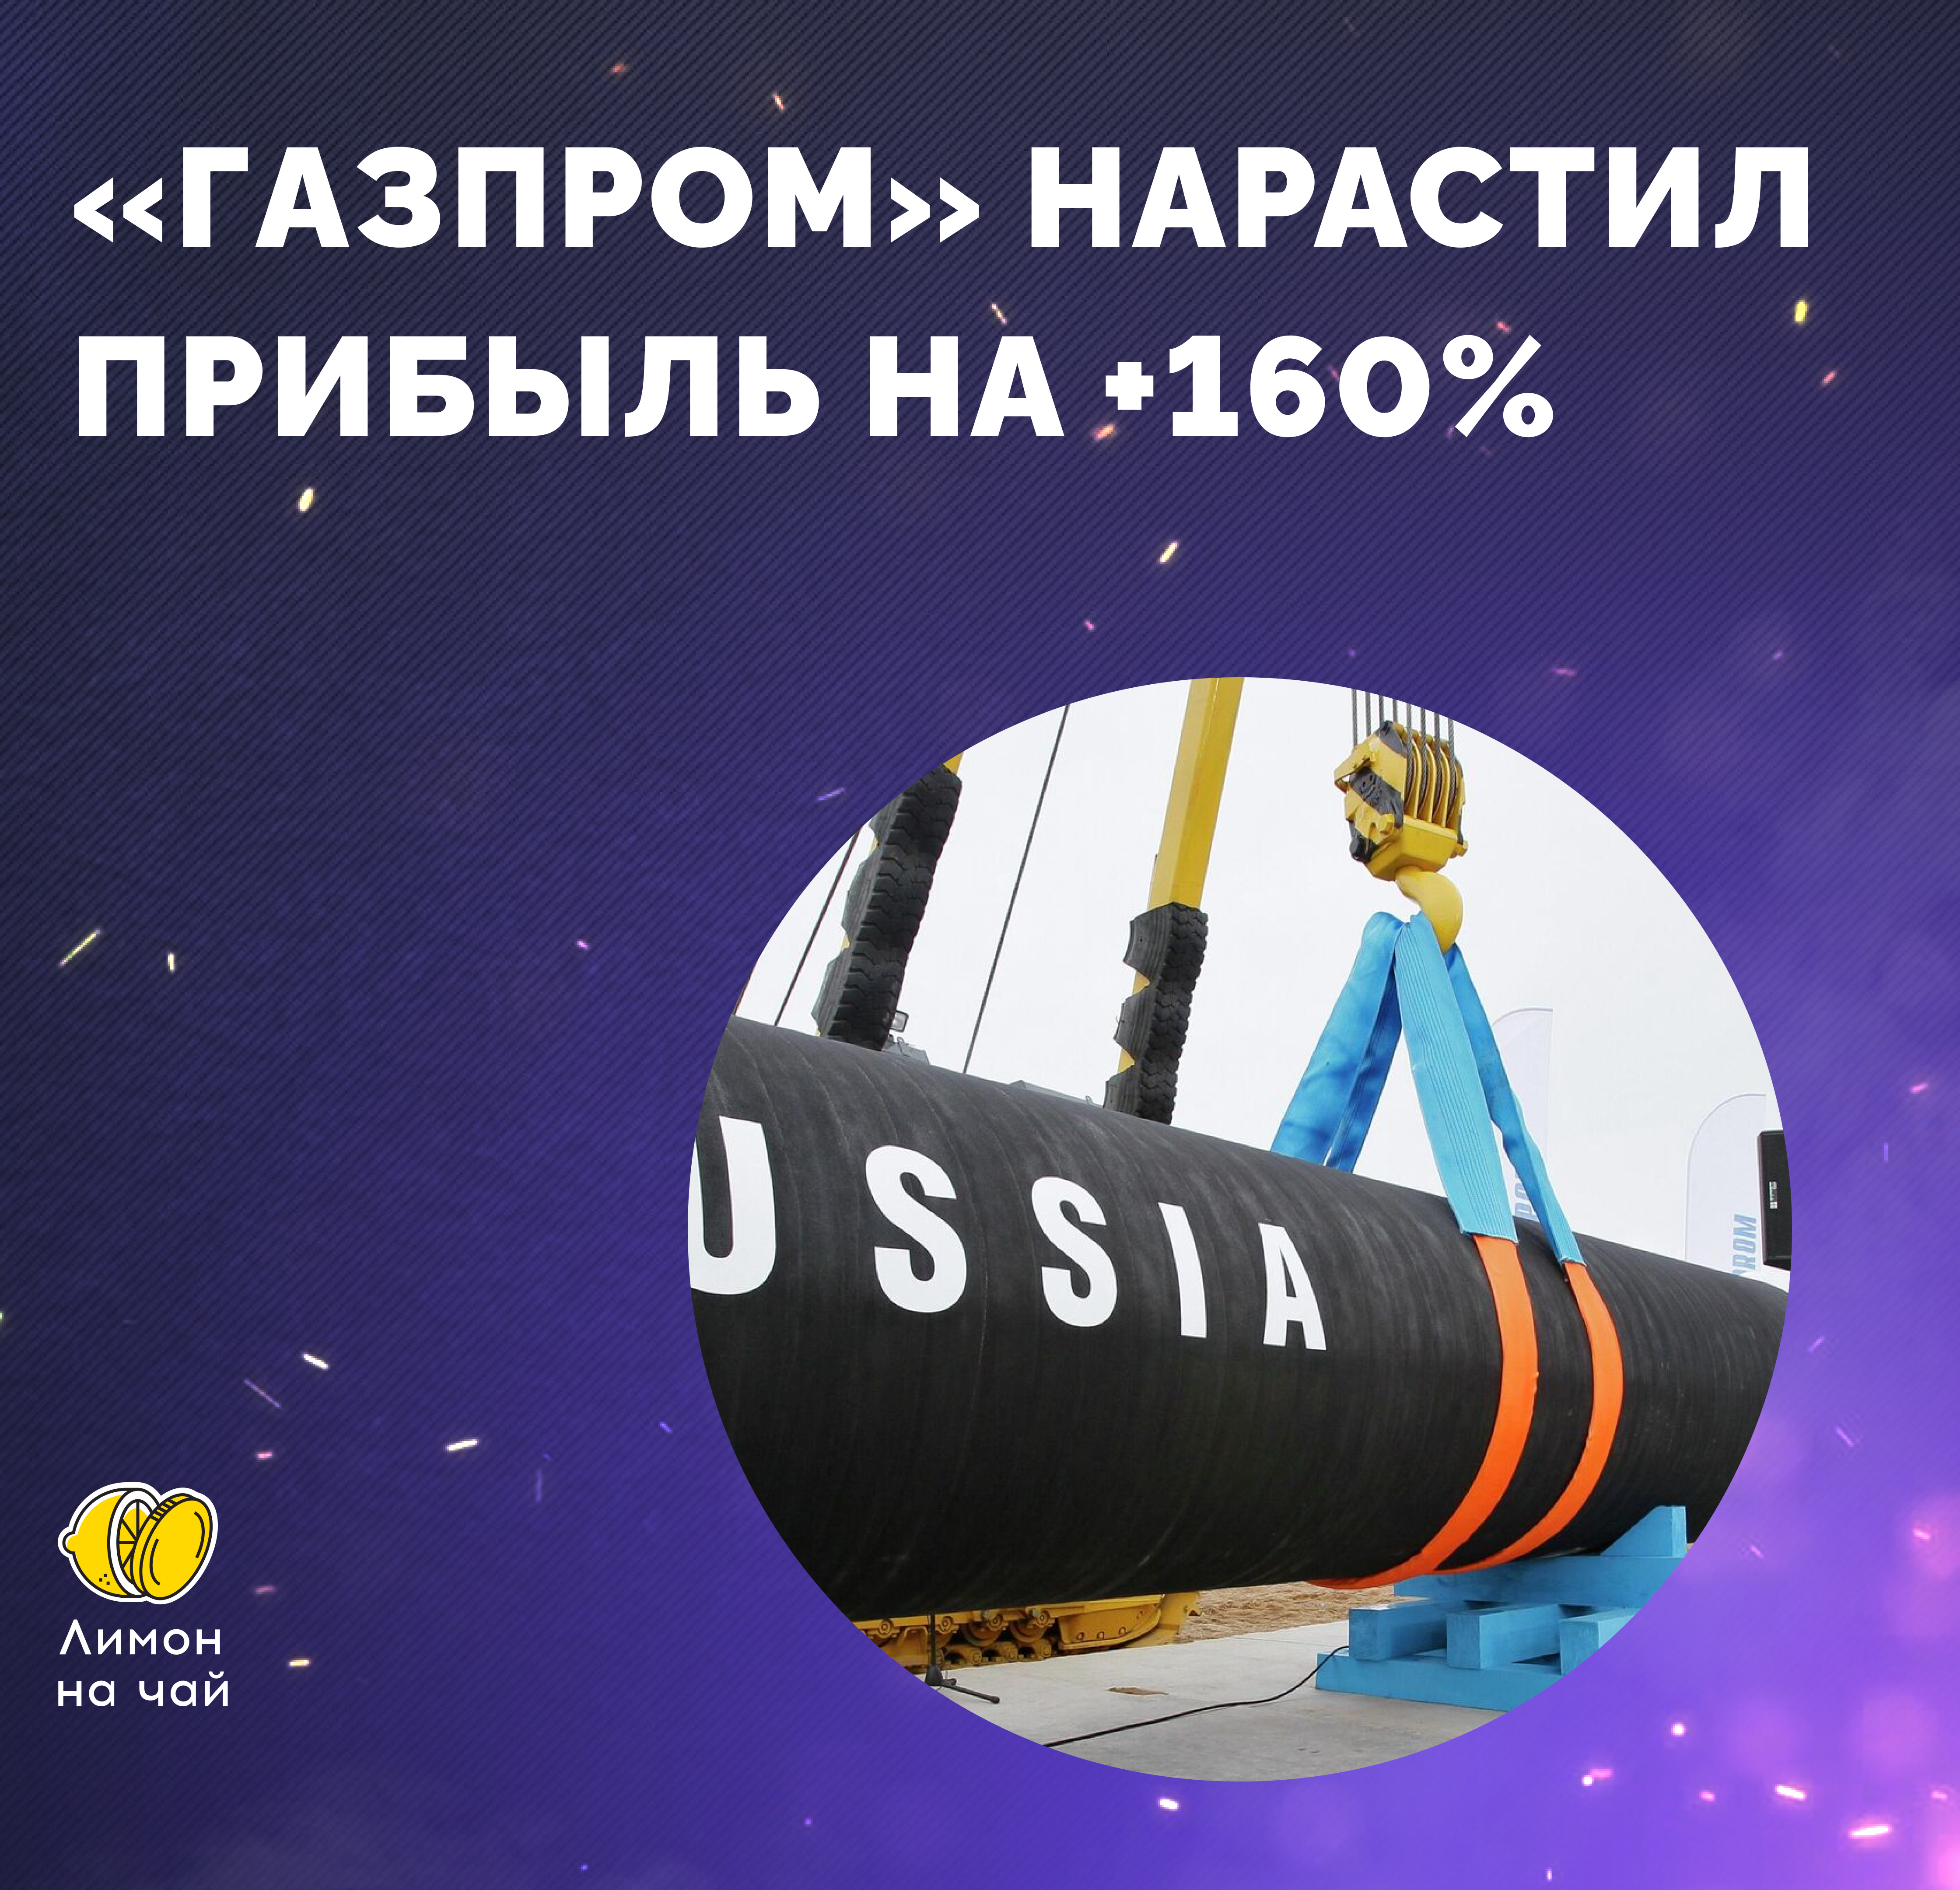 Страсти вокруг «Газпрома»: рост прибыли на +160% и авария на «Северном потоке»